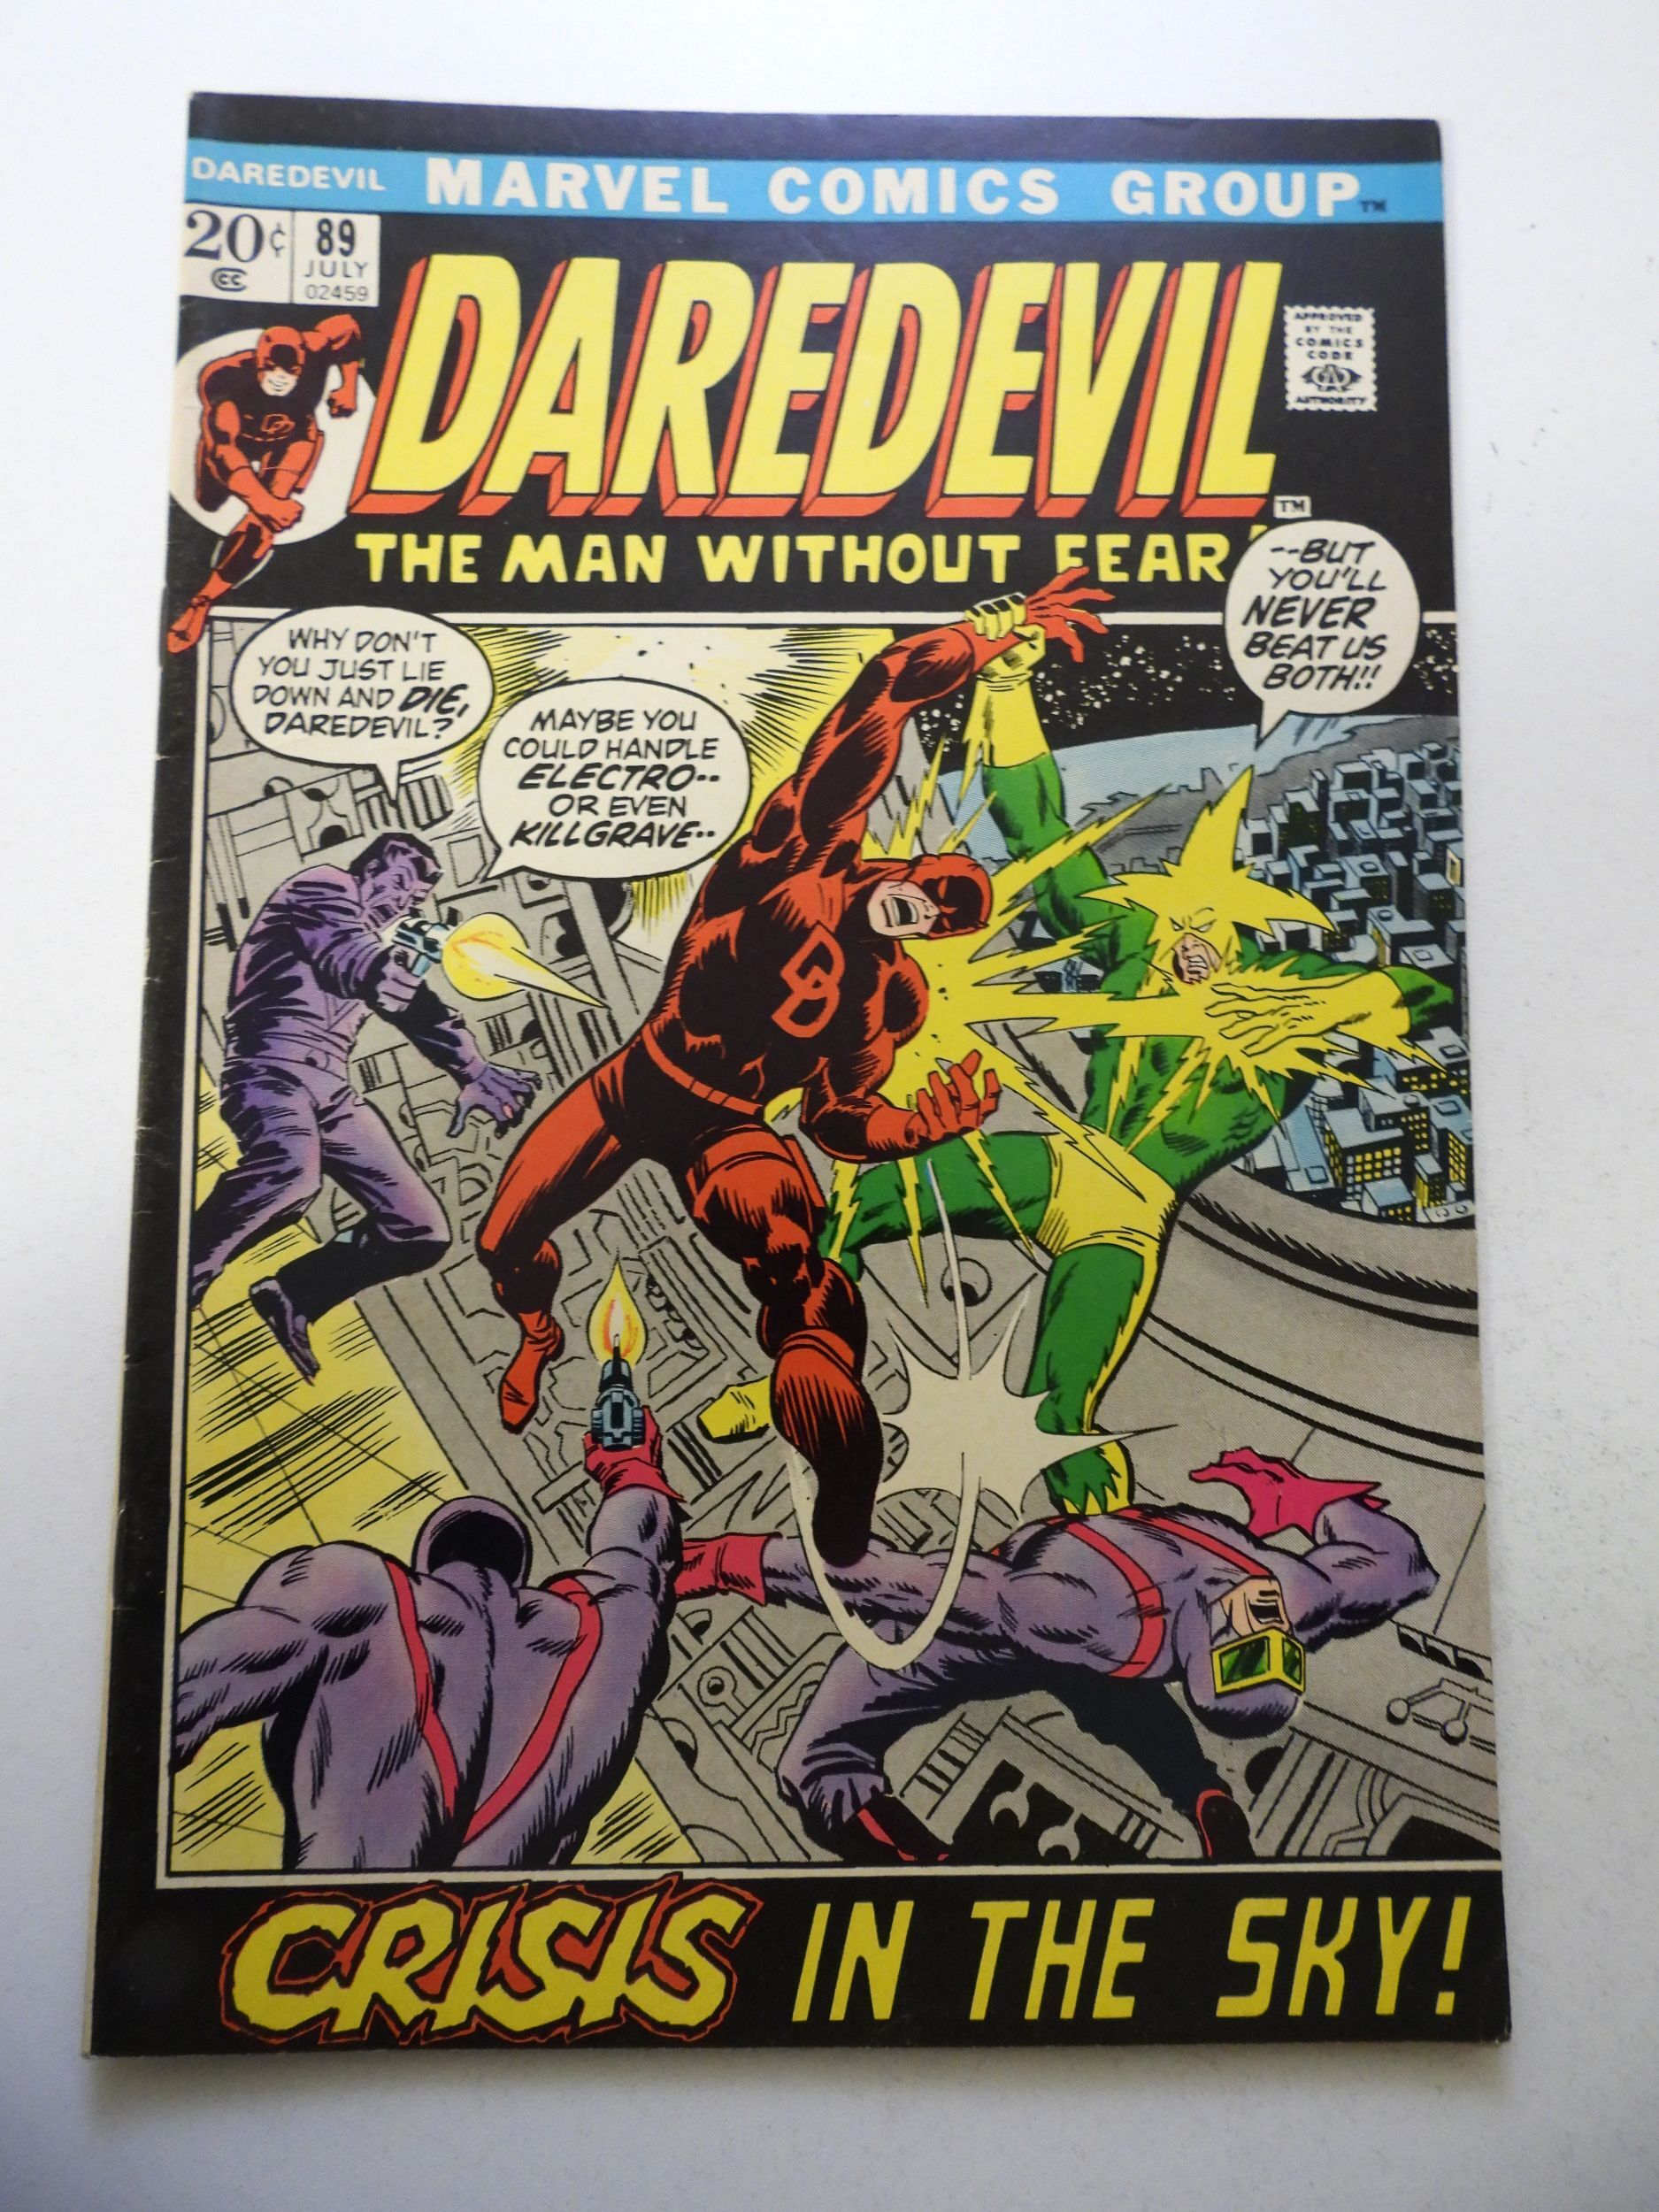 Daredevil #89 (1972) FN+ Condition | Comic Books - Bronze Age, Marvel ...